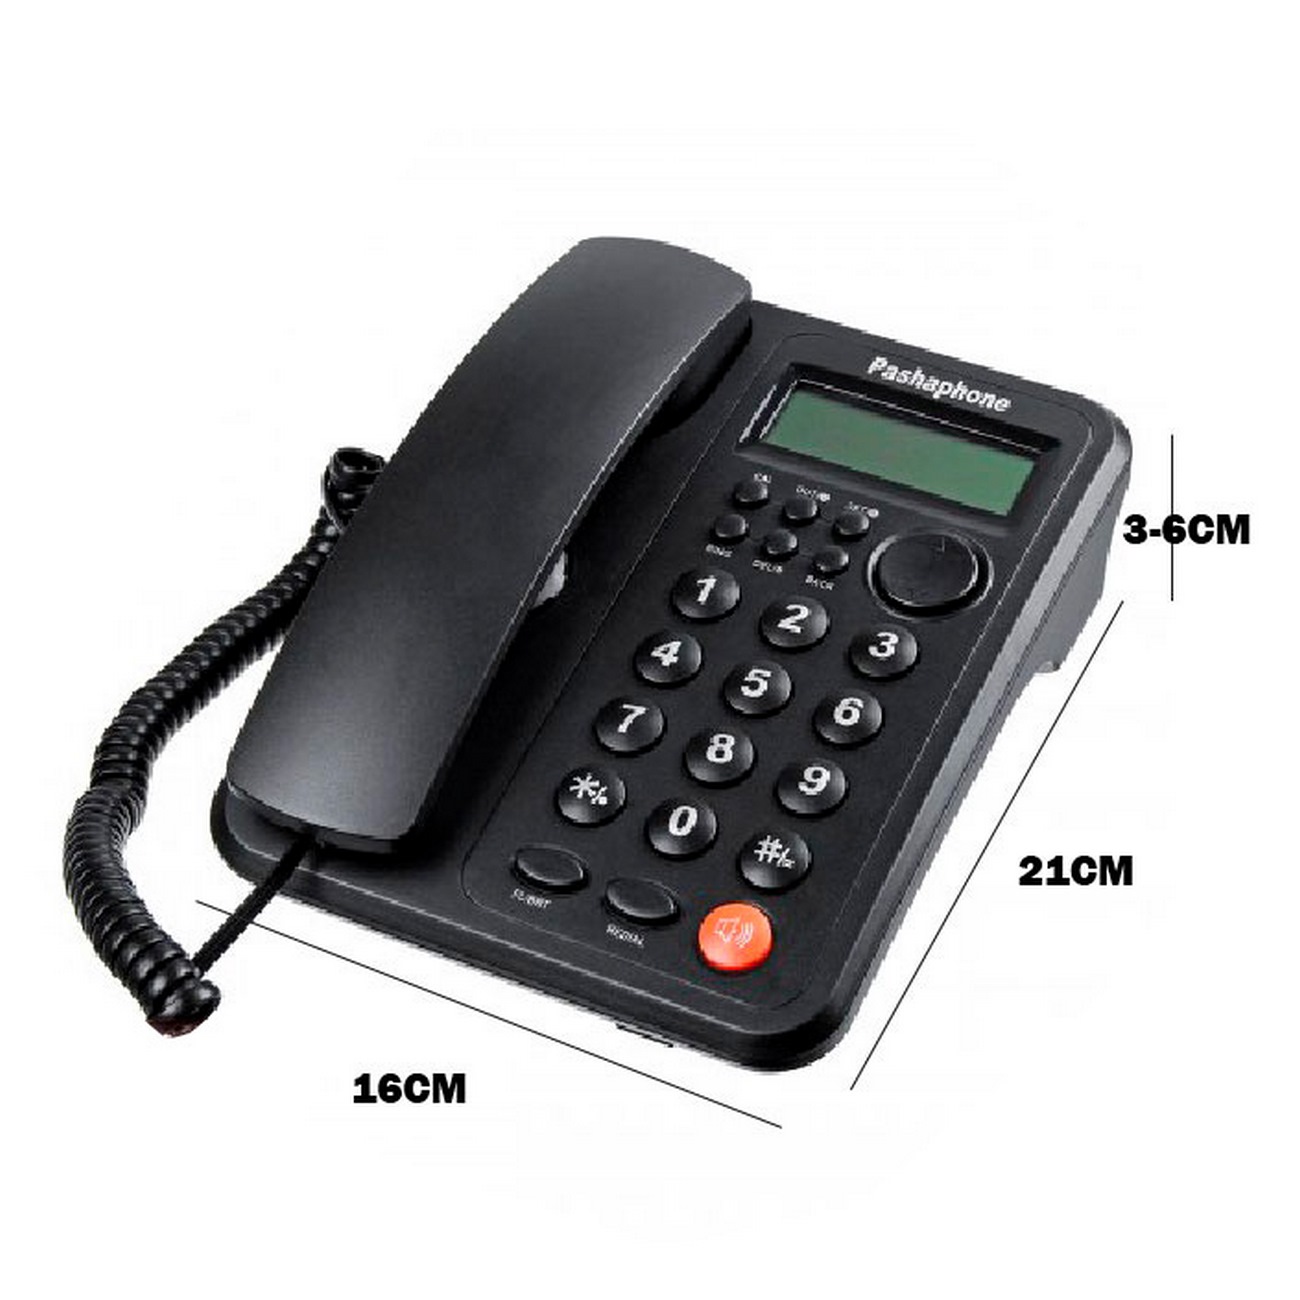 Telefono Inalambrico Alcatel E355 Negro X 2 Unidades